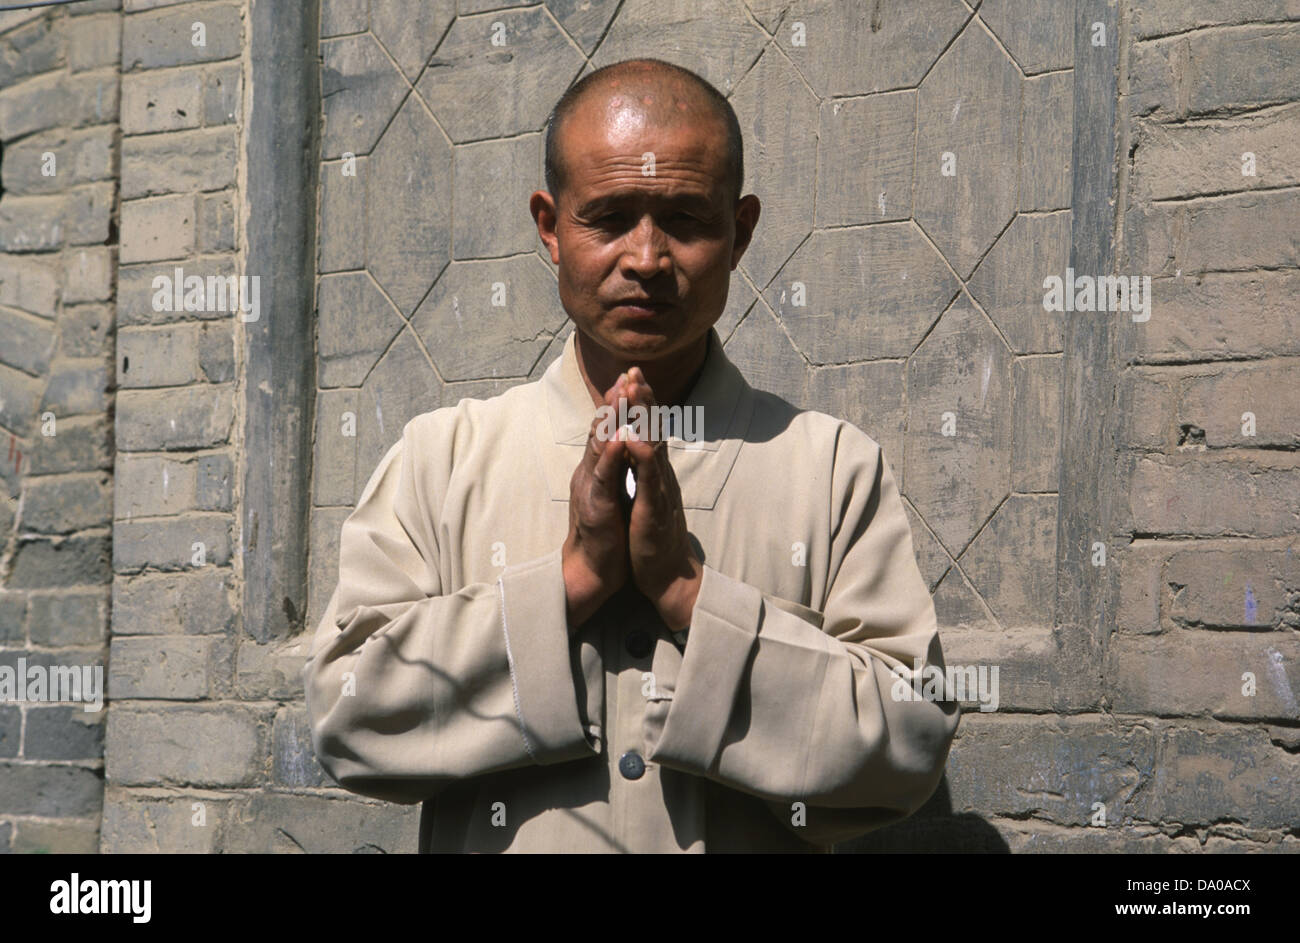 Orando plantean de un monje Daoísta en Gao Miao si templo budista que sirve Daoists Zhongwei y confucianos iguales en una ciudad a nivel de prefectura de la provincia de Ningxia China Foto de stock